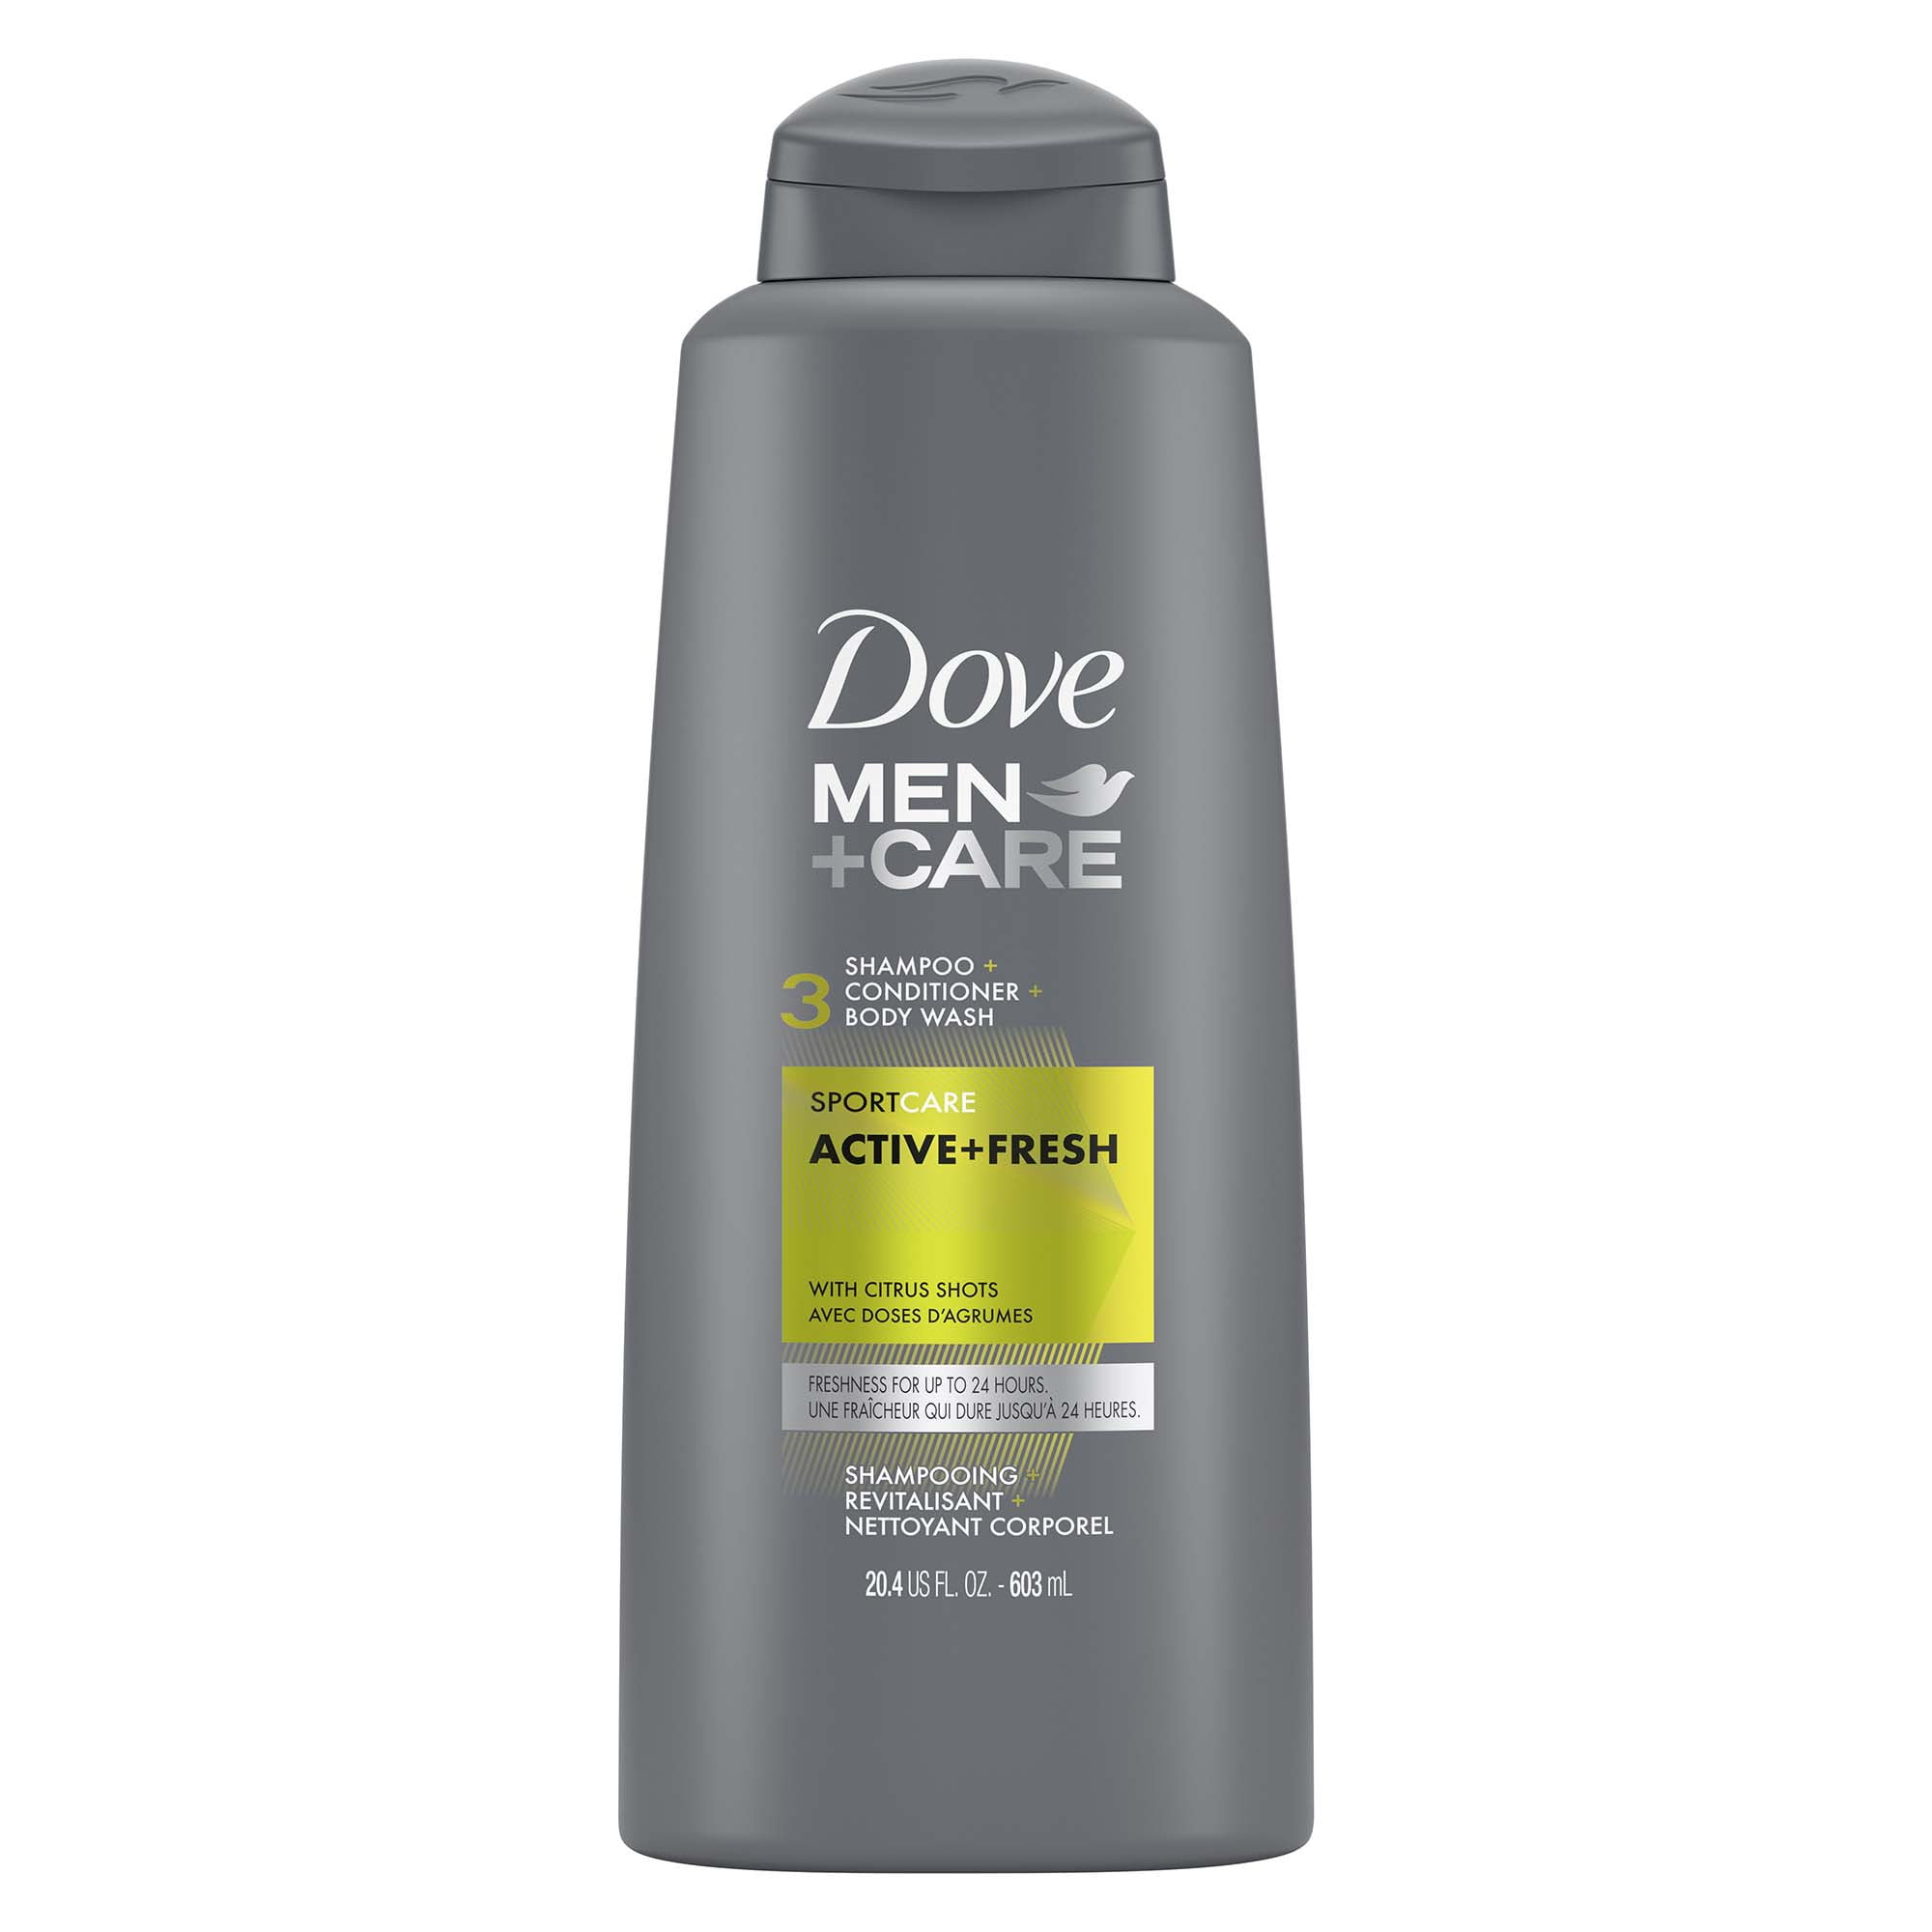 Dove Men+Care Sport+Care Active+Fresh 3 in 1 Shampoo  oz 